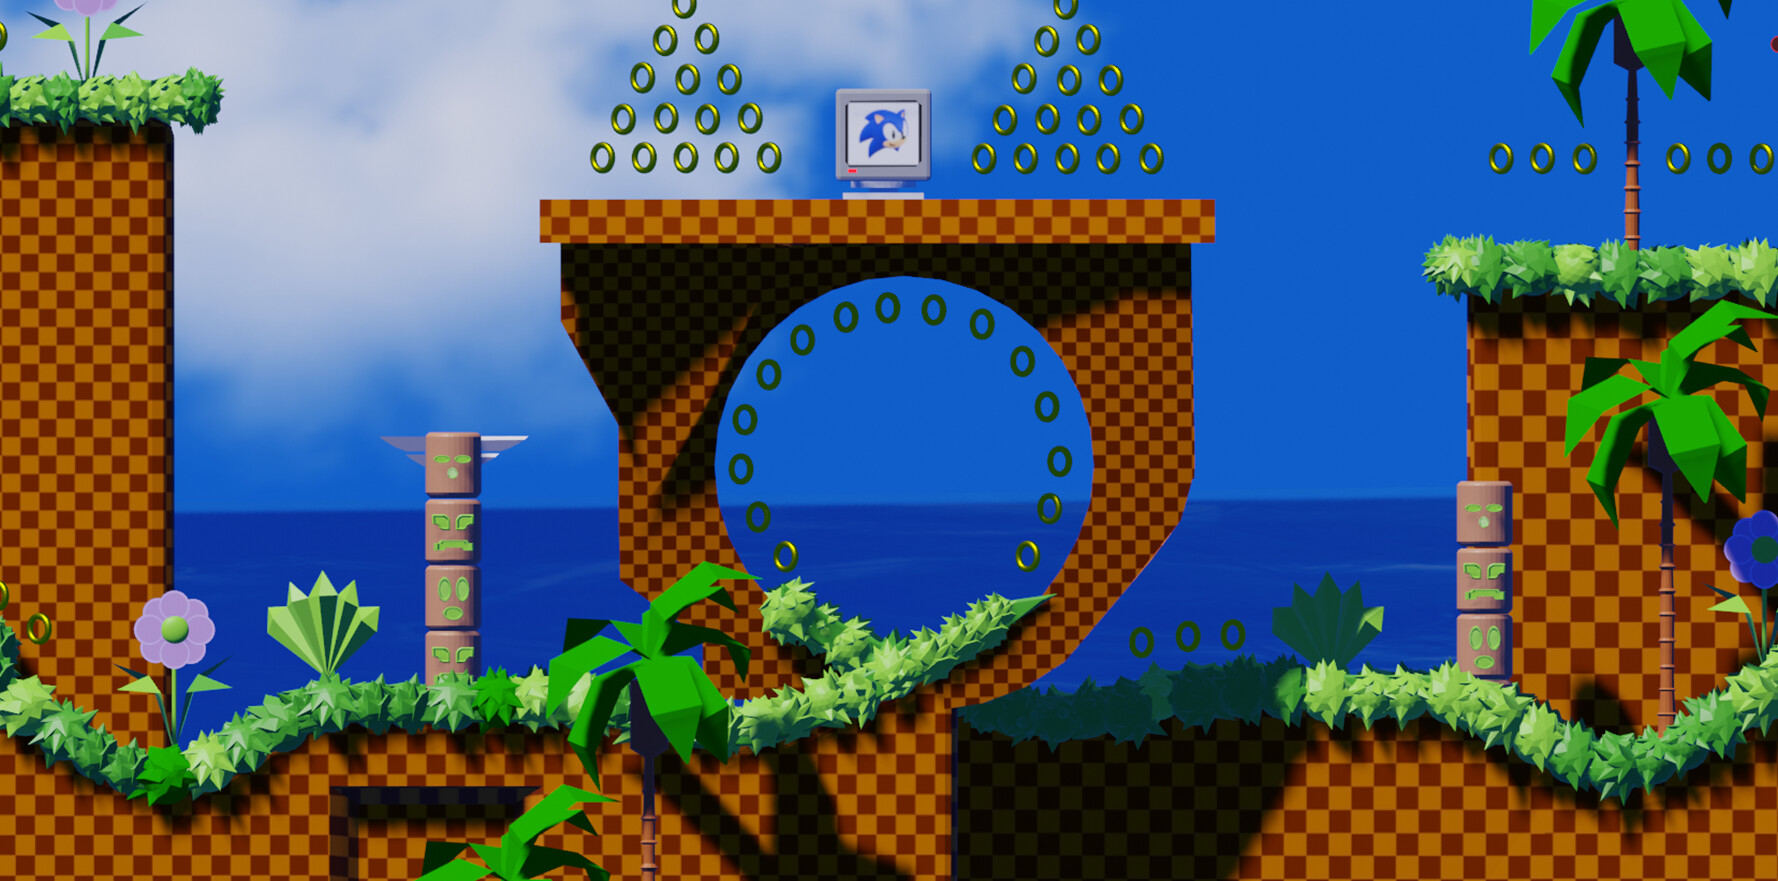 ArtStation - Thiết kế lại Green Hill 3D | Sonic The Hedgehog: Fan của Sonic The Hedgehog sẽ rất thích thú với bộ ảnh thiết kế lại khu vực Green Hill 3D đầy màu sắc và sinh động trên ArtStation. Những hình ảnh này thực sự là một chuyến du hành đáng nhớ đến với thế giới huyền ảo của Sonic.